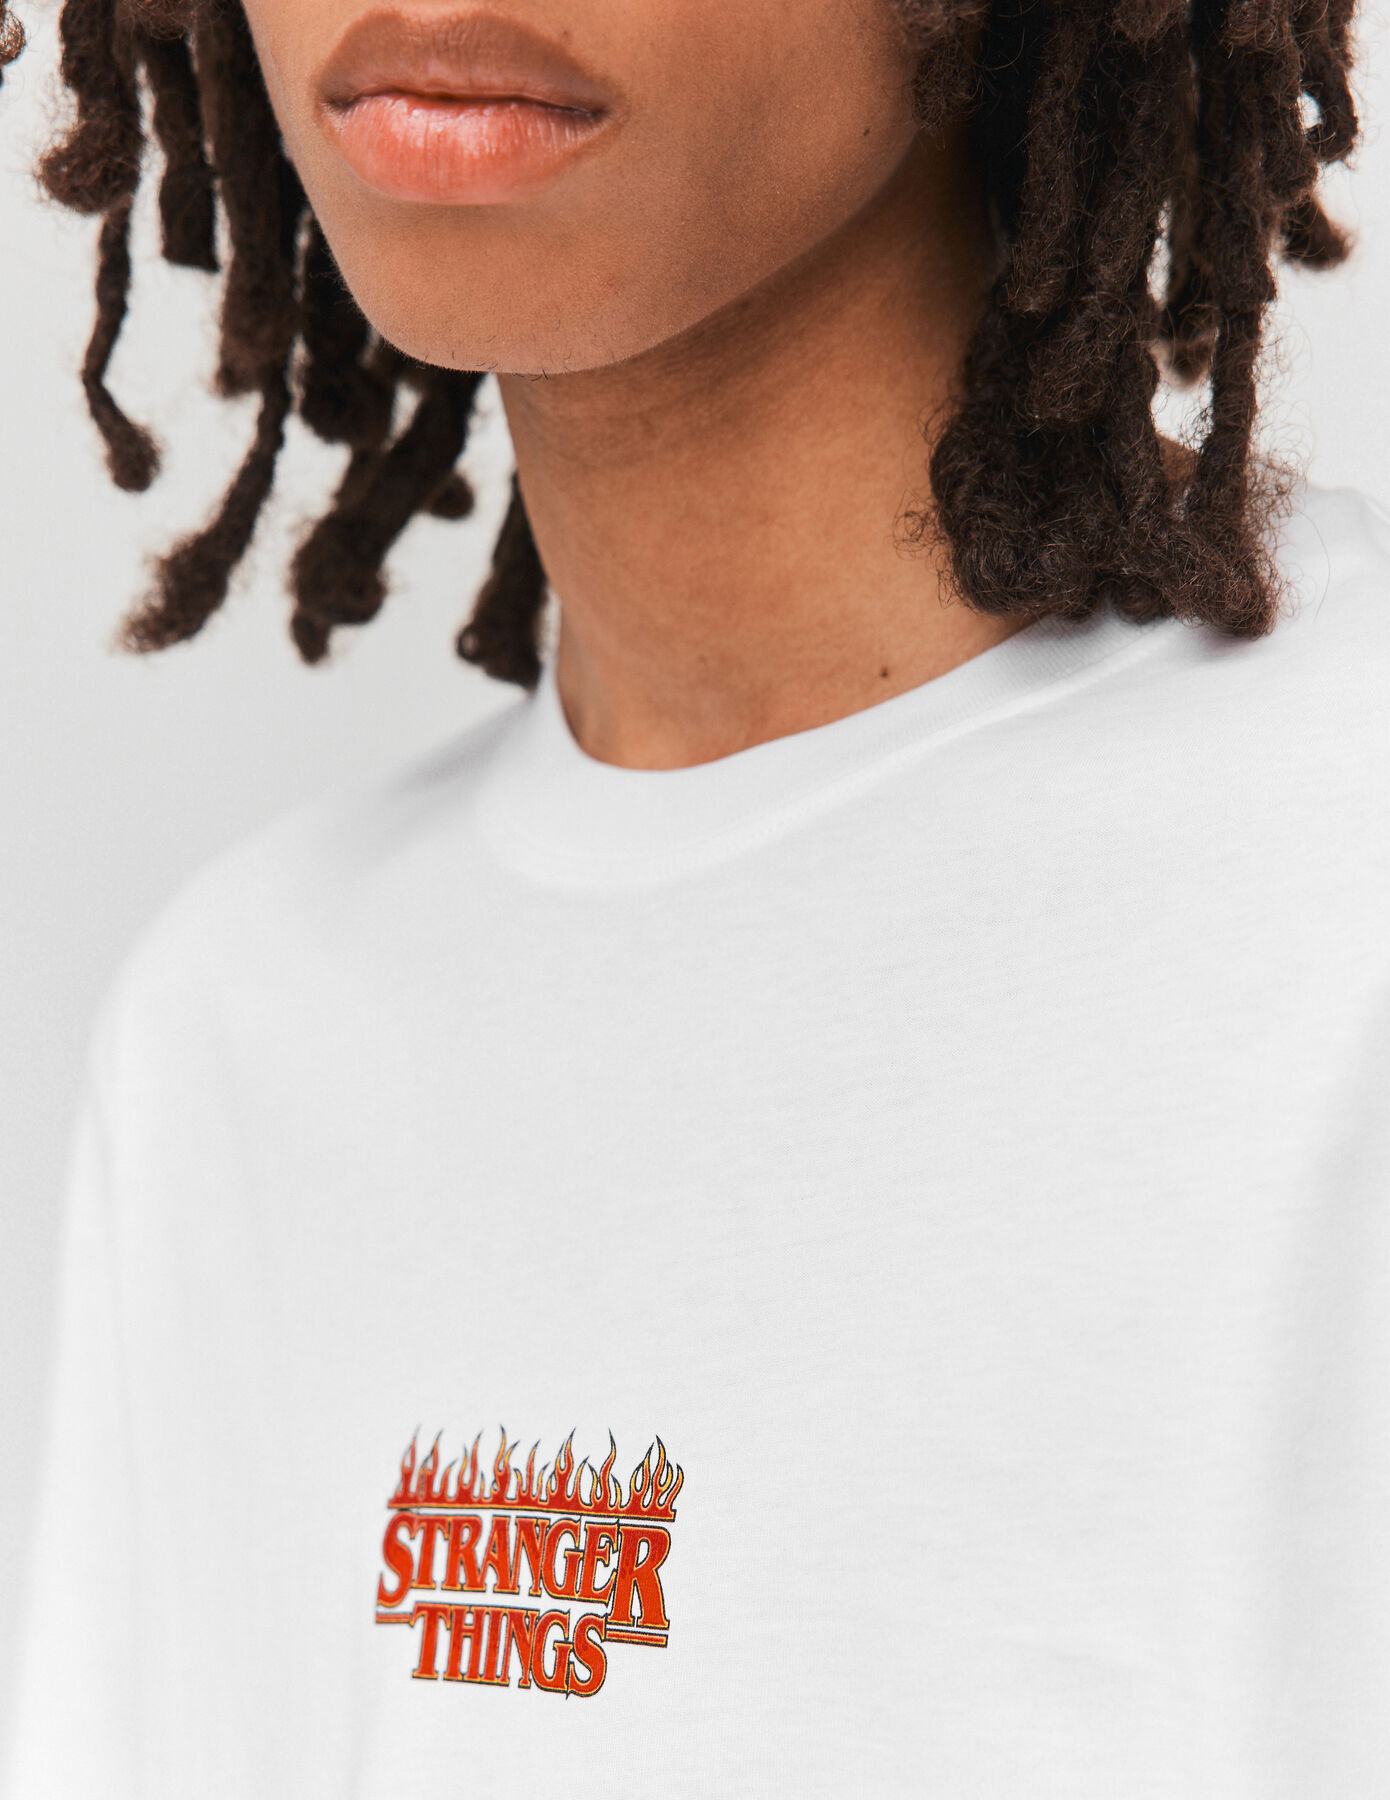 T-shirt collab "STRANGER THINGS"